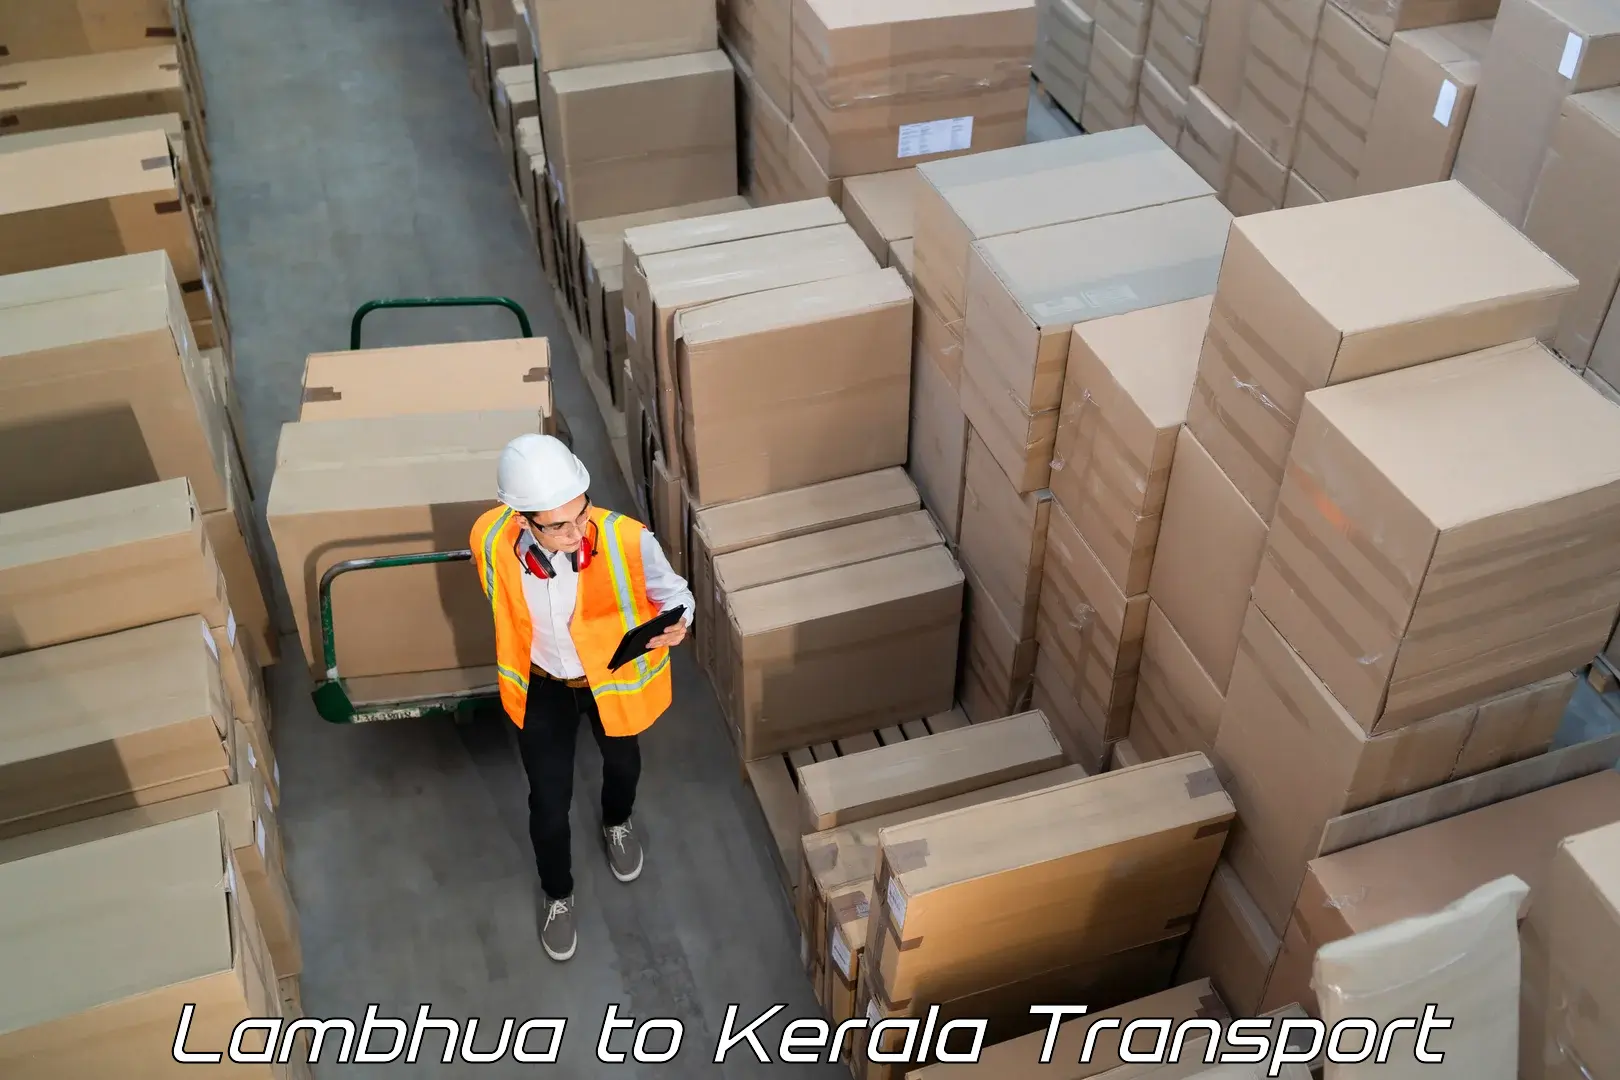 Luggage transport services Lambhua to Manthuka